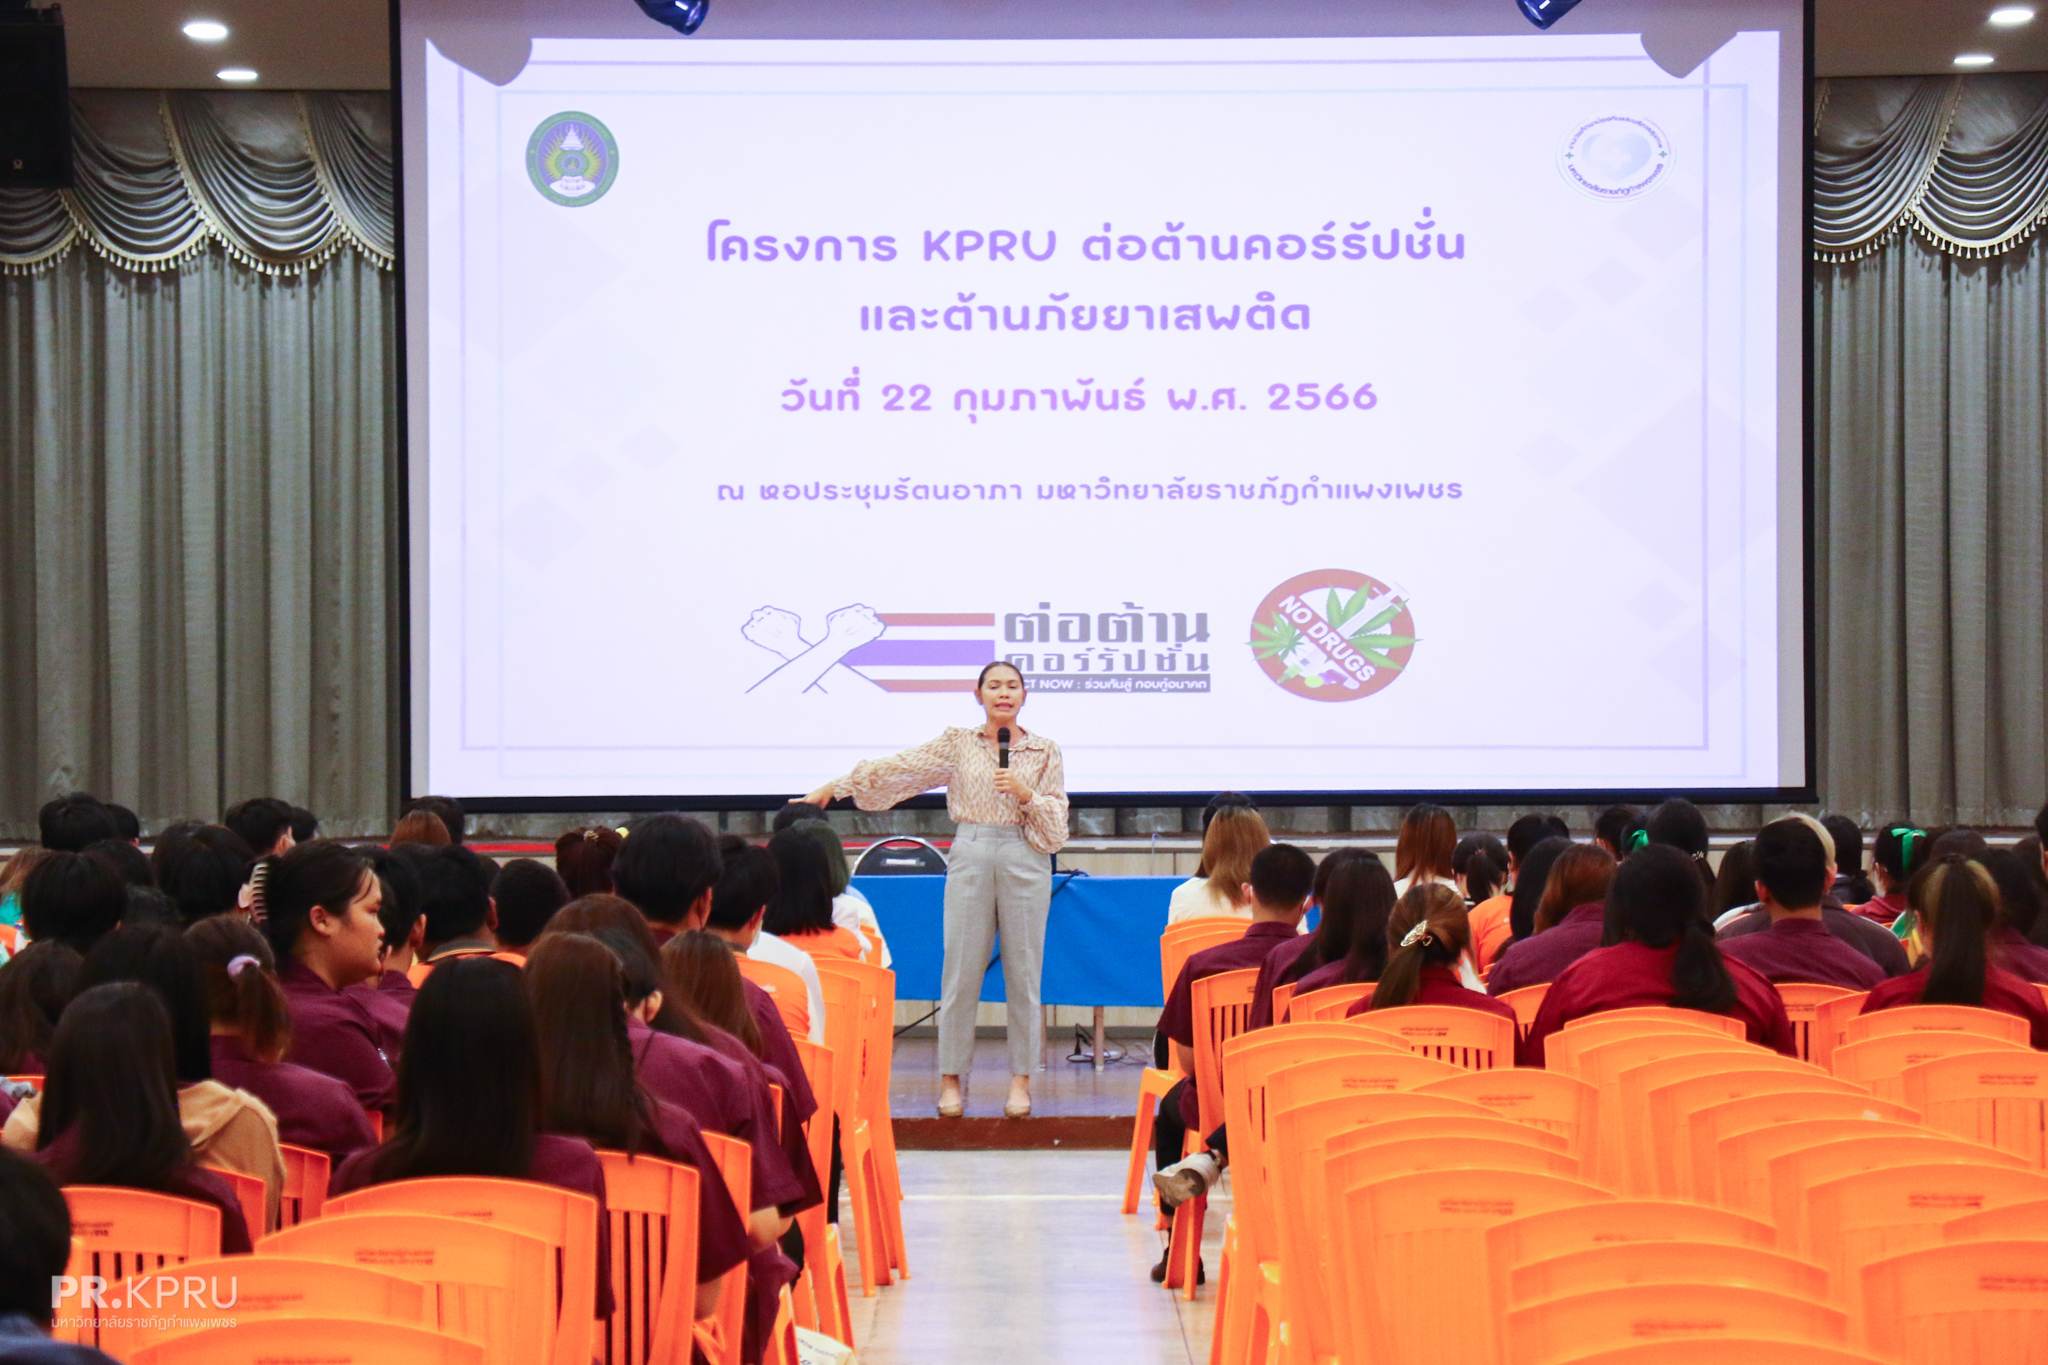 KPRU ต่อต้านคอร์รัปชันและต้านภัยยาเสพติด ปีการศึกษา 2565